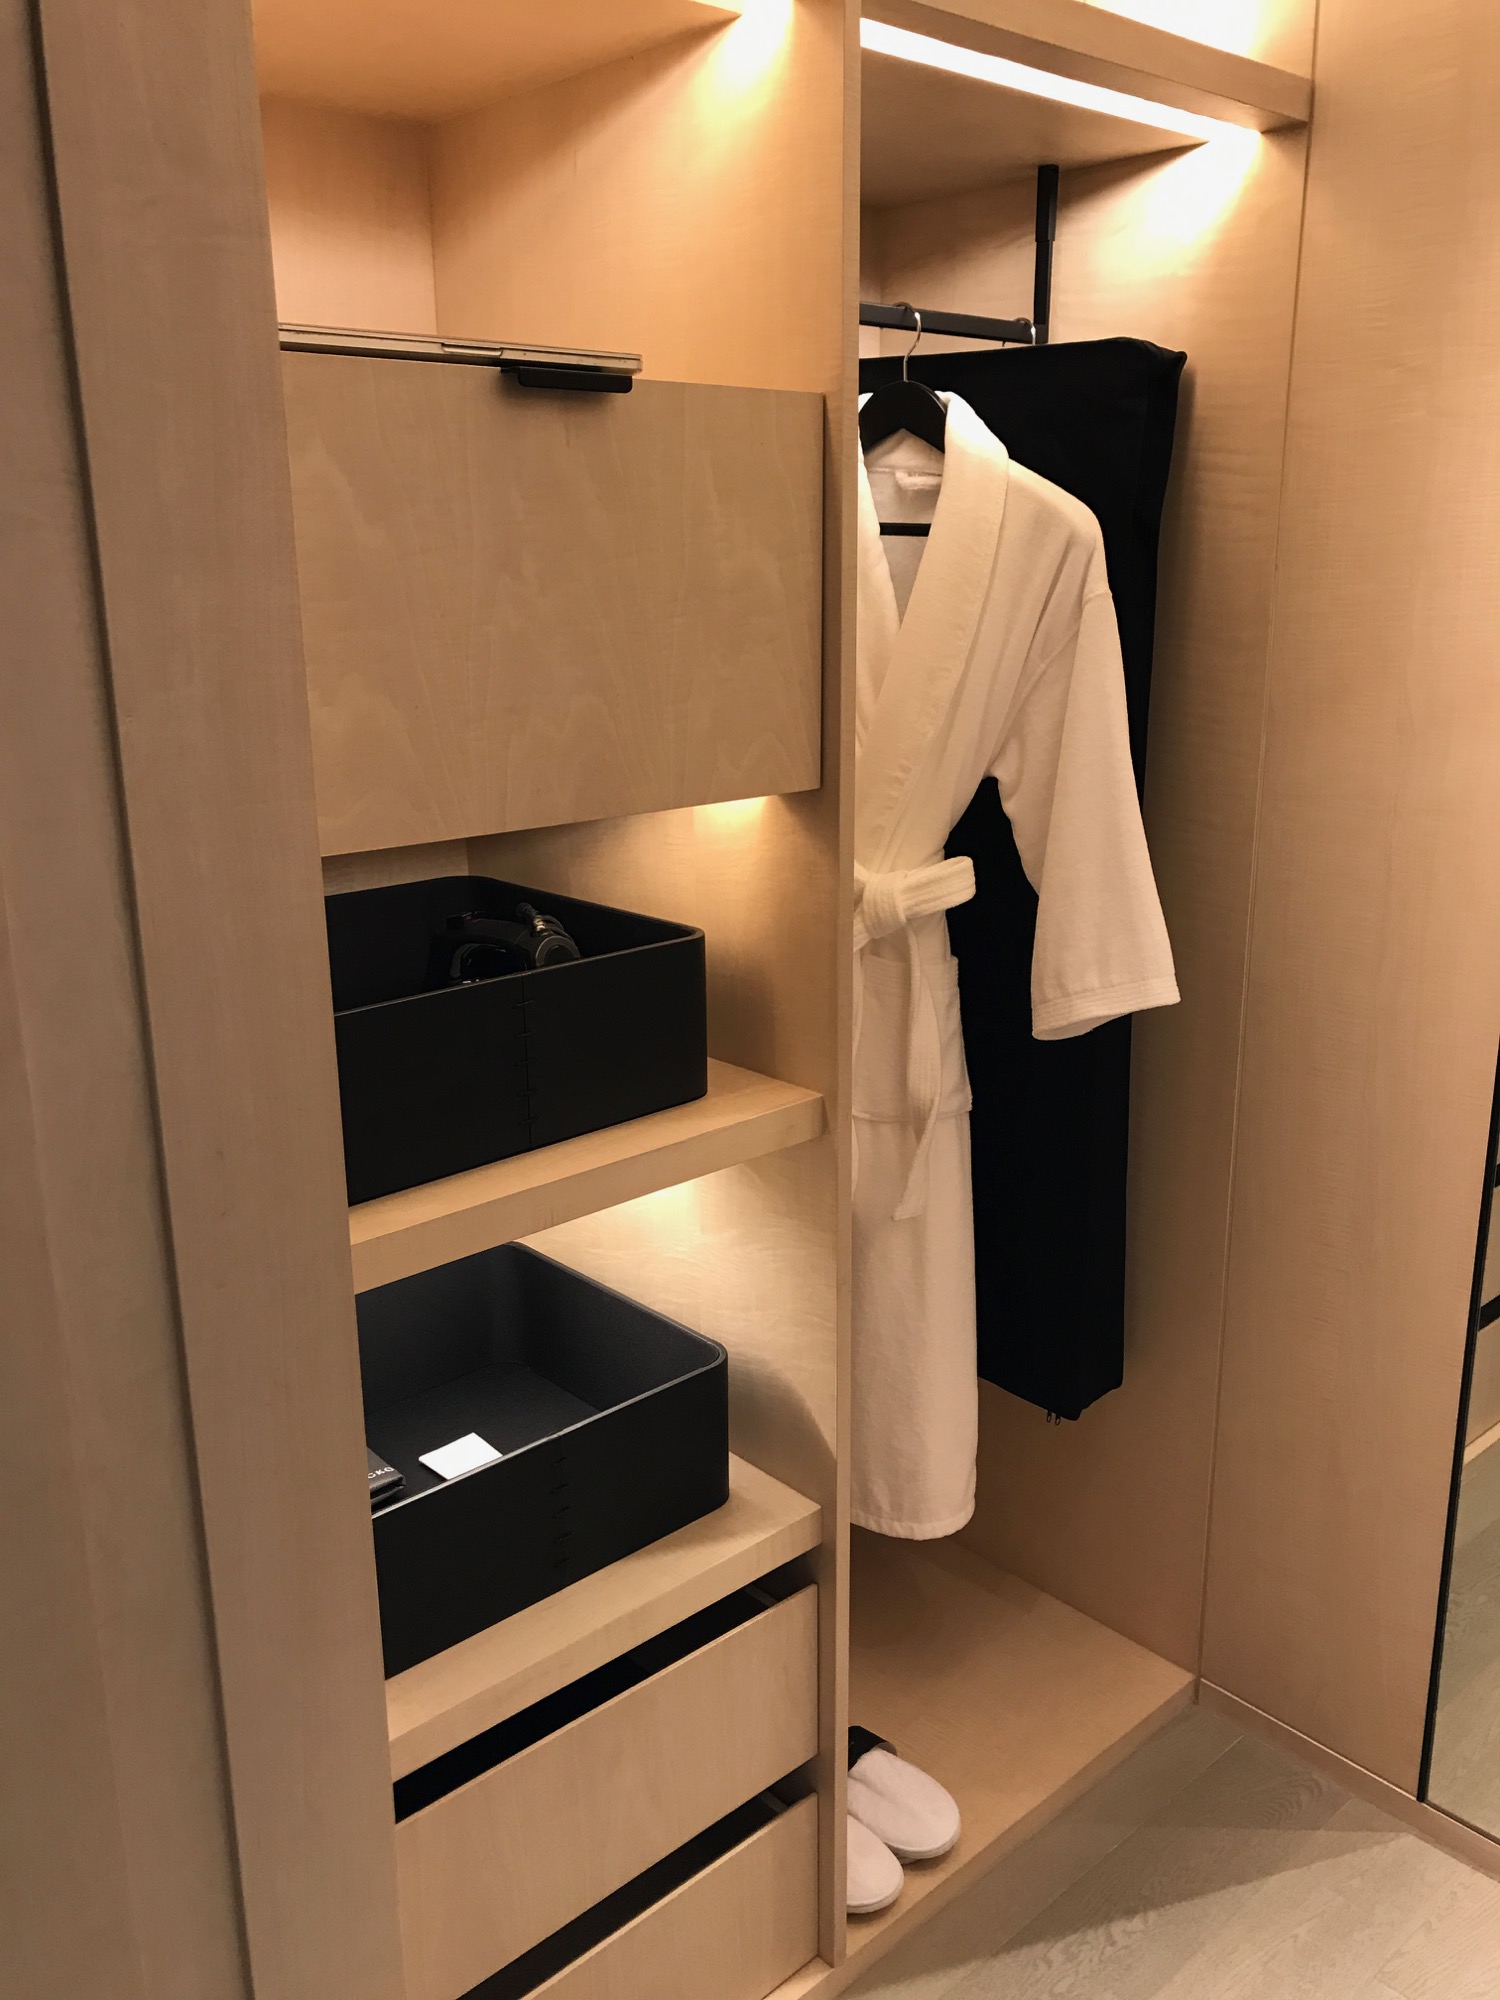 a white robe in a closet